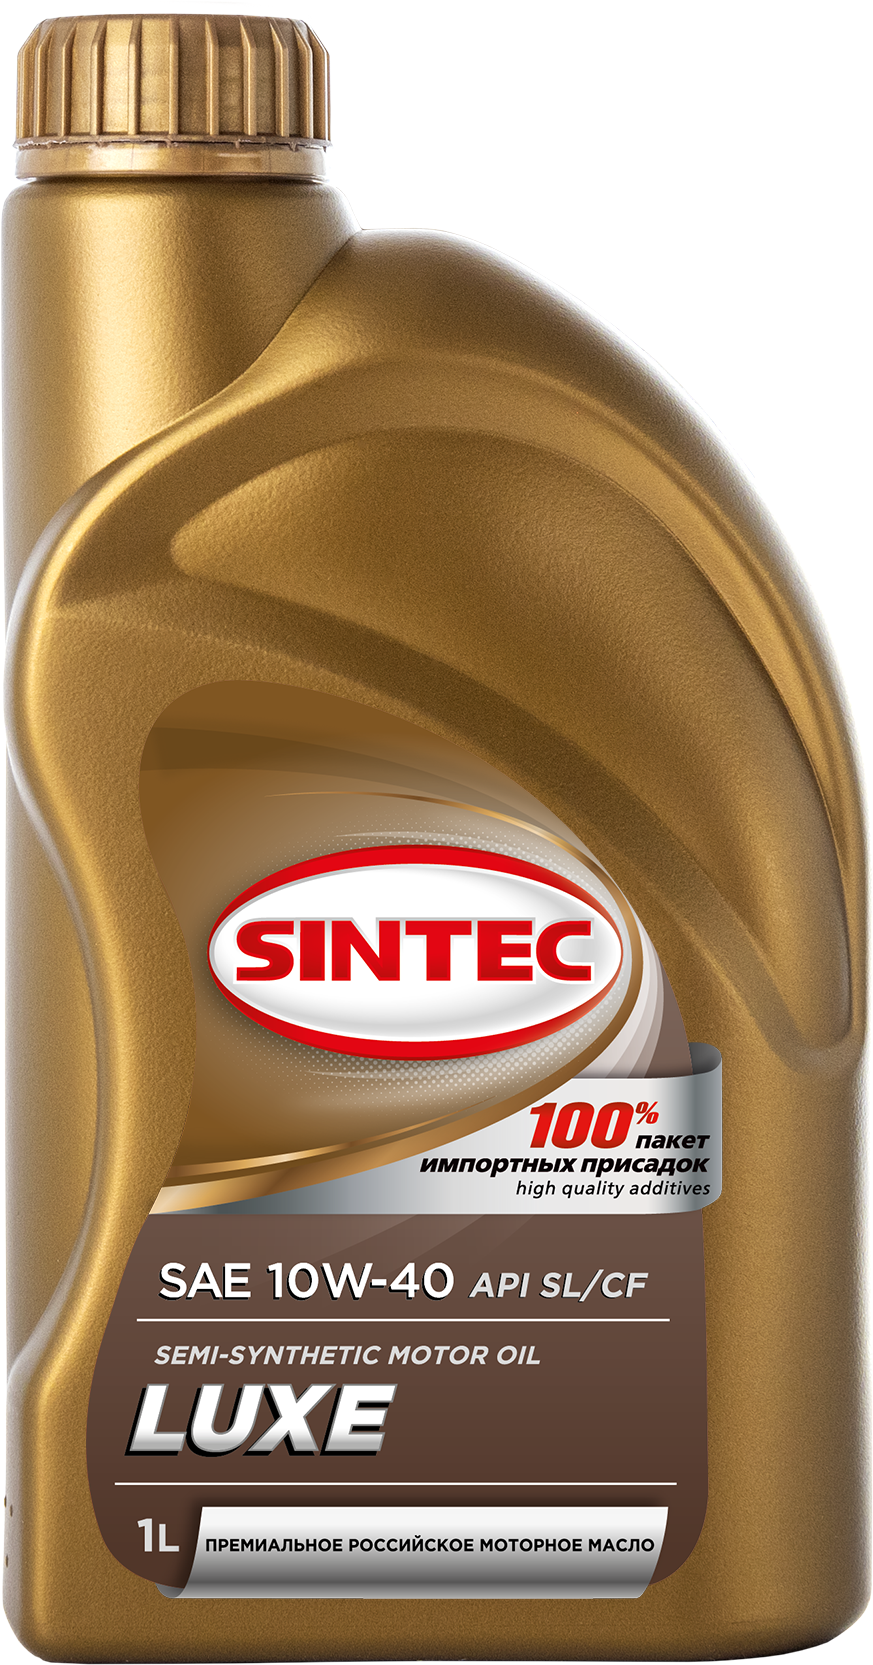 Полусинтетическое моторное масло SINTEC LUXE 10W-40 API SL/CF, 1 л